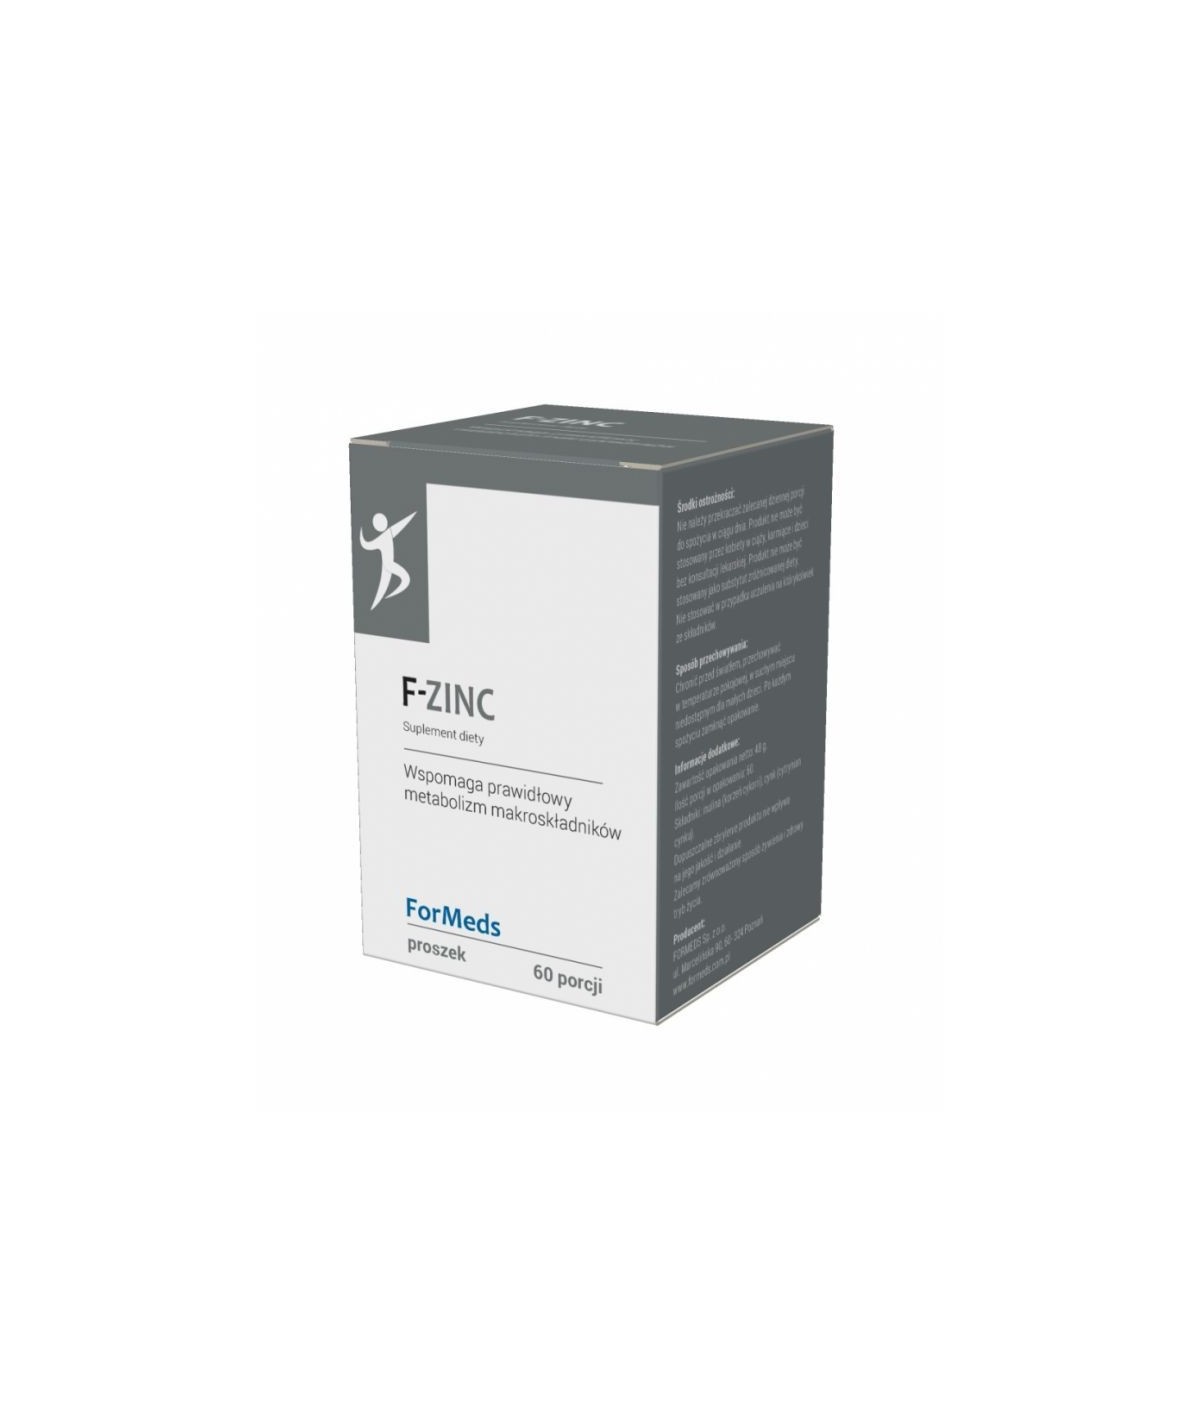 F - ZINC (CYNK) wspomaga prawidłowy metabolizm makroskładników - 60 porcji (48 g)